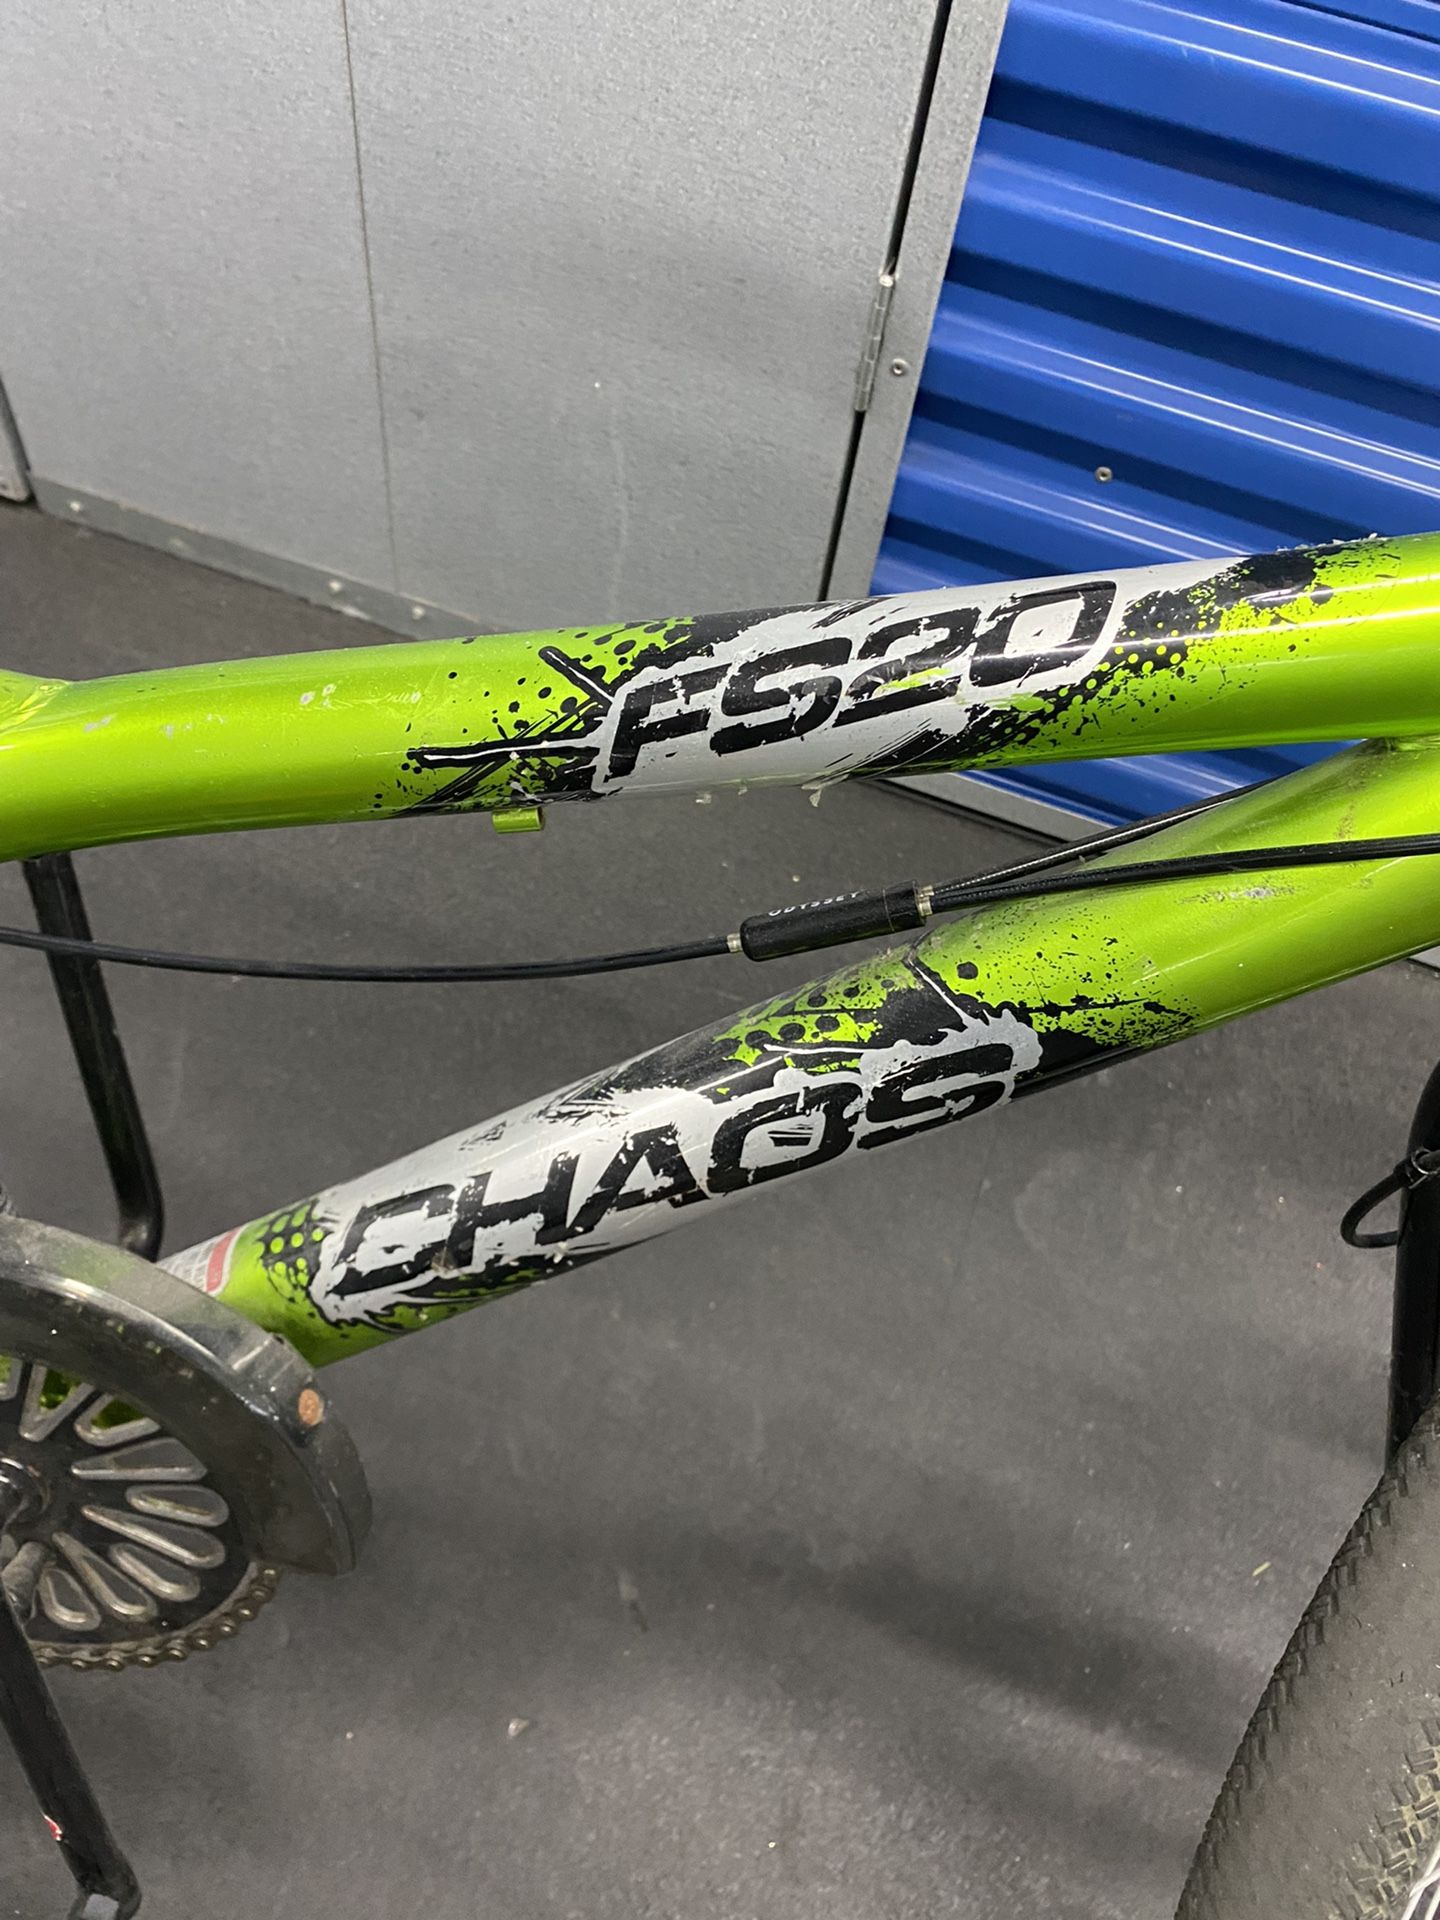 FS20 chaos Bike 